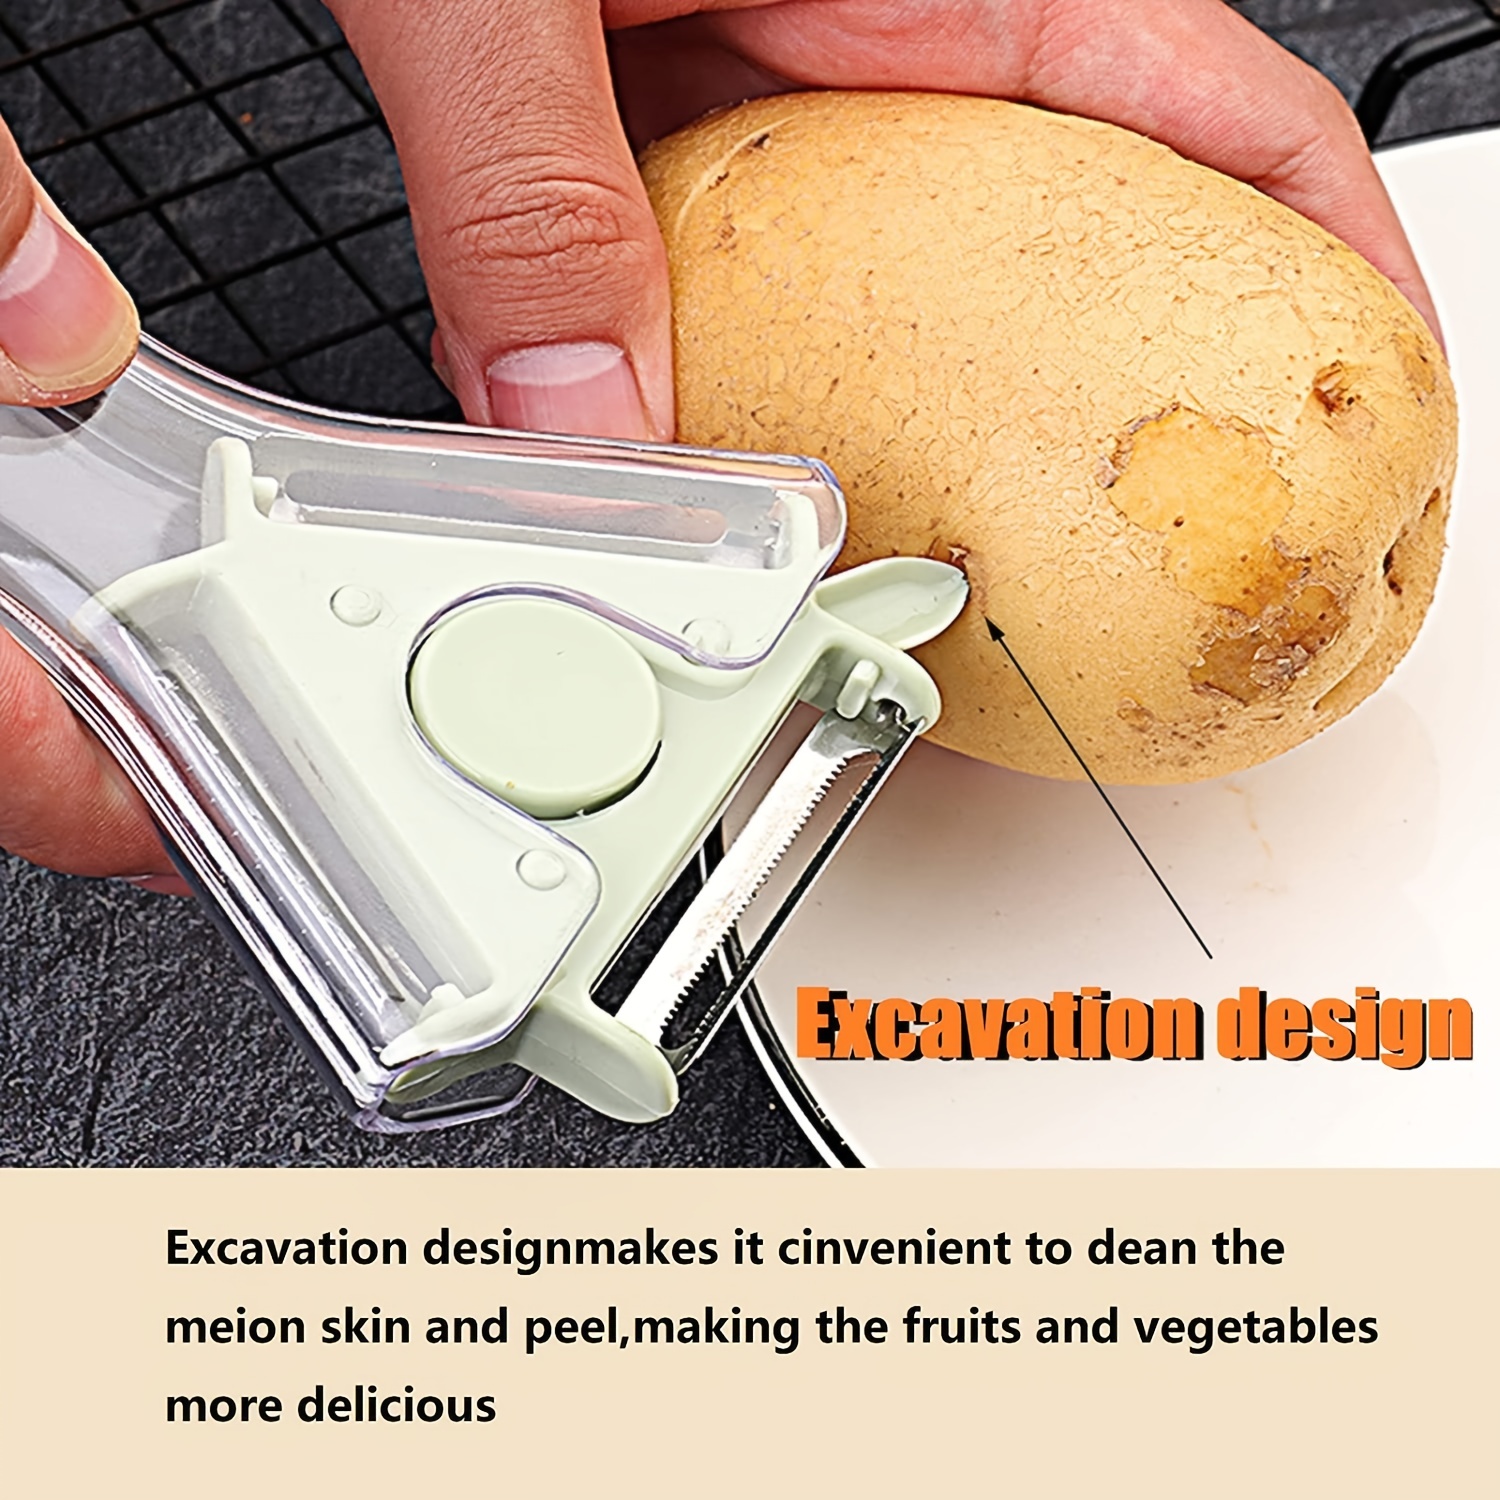 Swivel Vegetable Peeler, Stainless Steel Fruit Peeler Potato